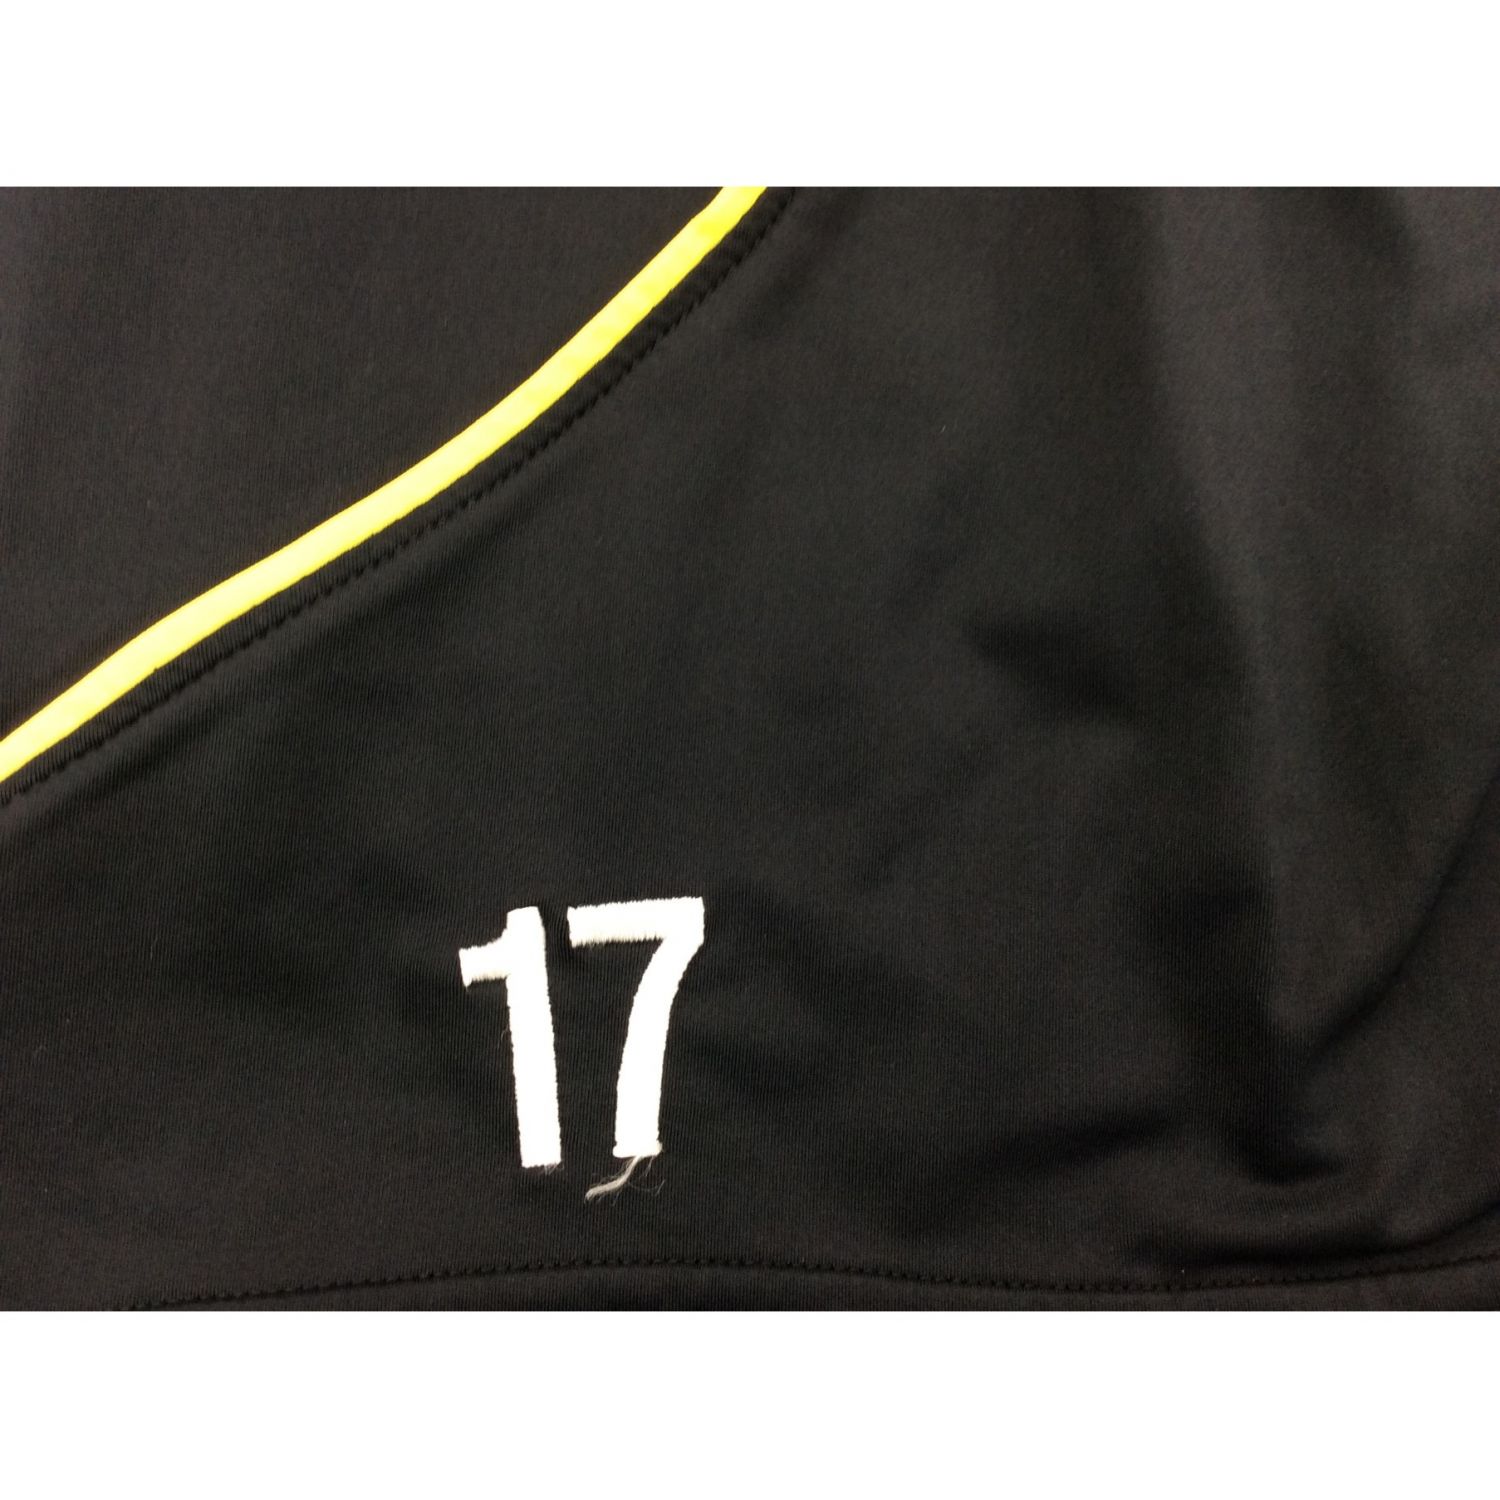 UMBRO (アンブロ) サッカーウェア 柏レイソル 17 選手支給品 ブラック